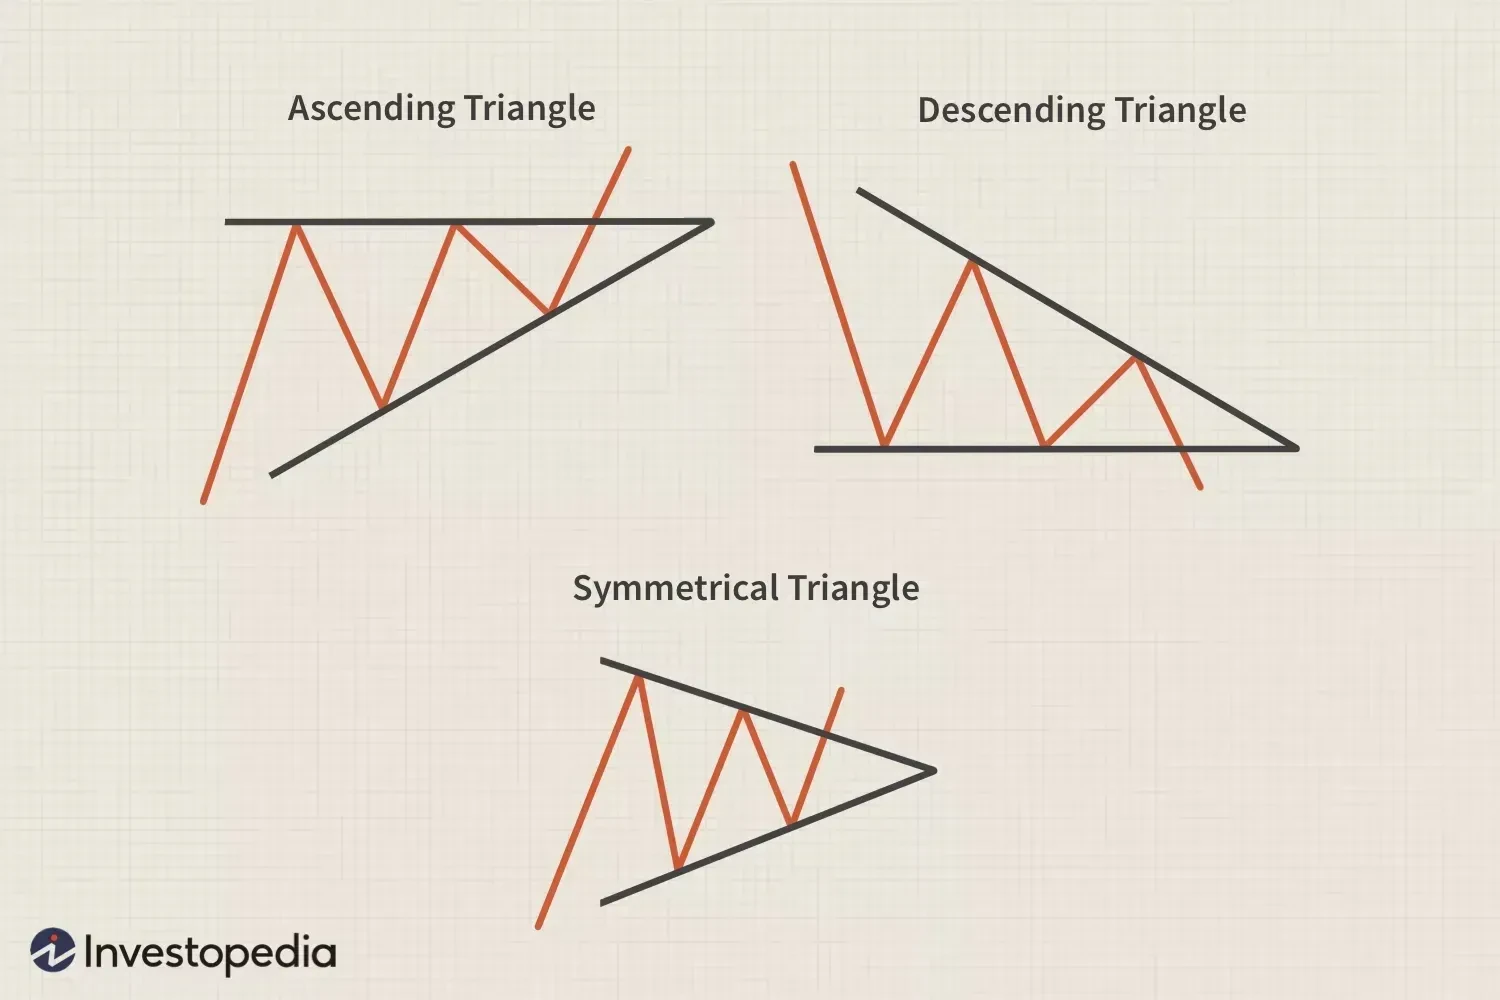 上升和下降三角形